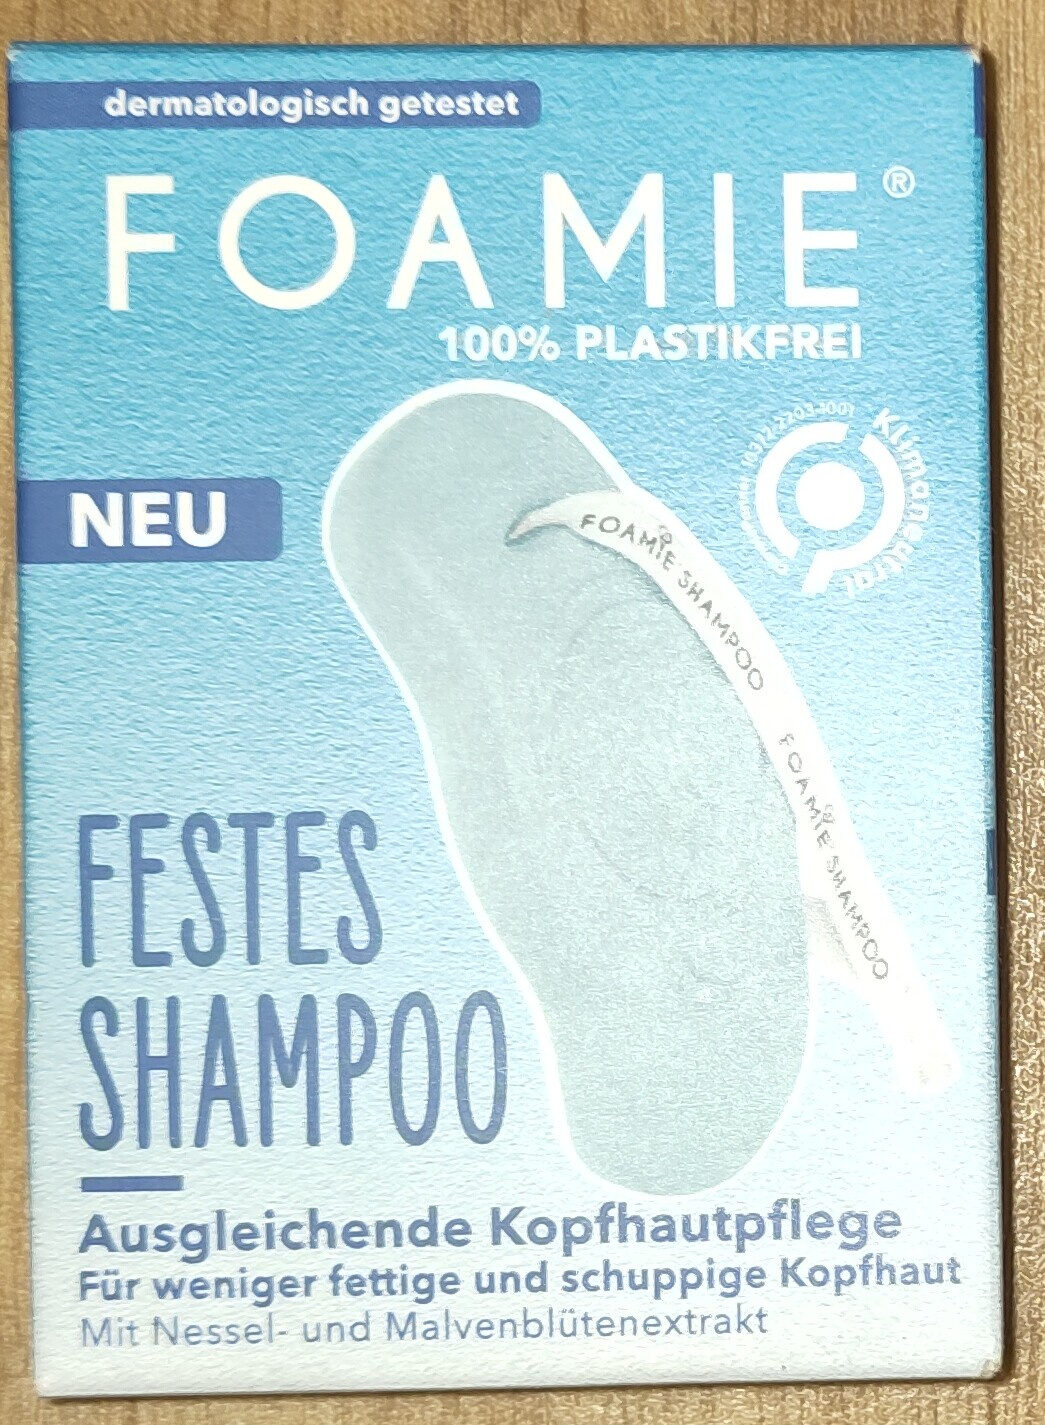 festes Shampoo Ausgegleichende Kopfhautpflege - Tuote - de